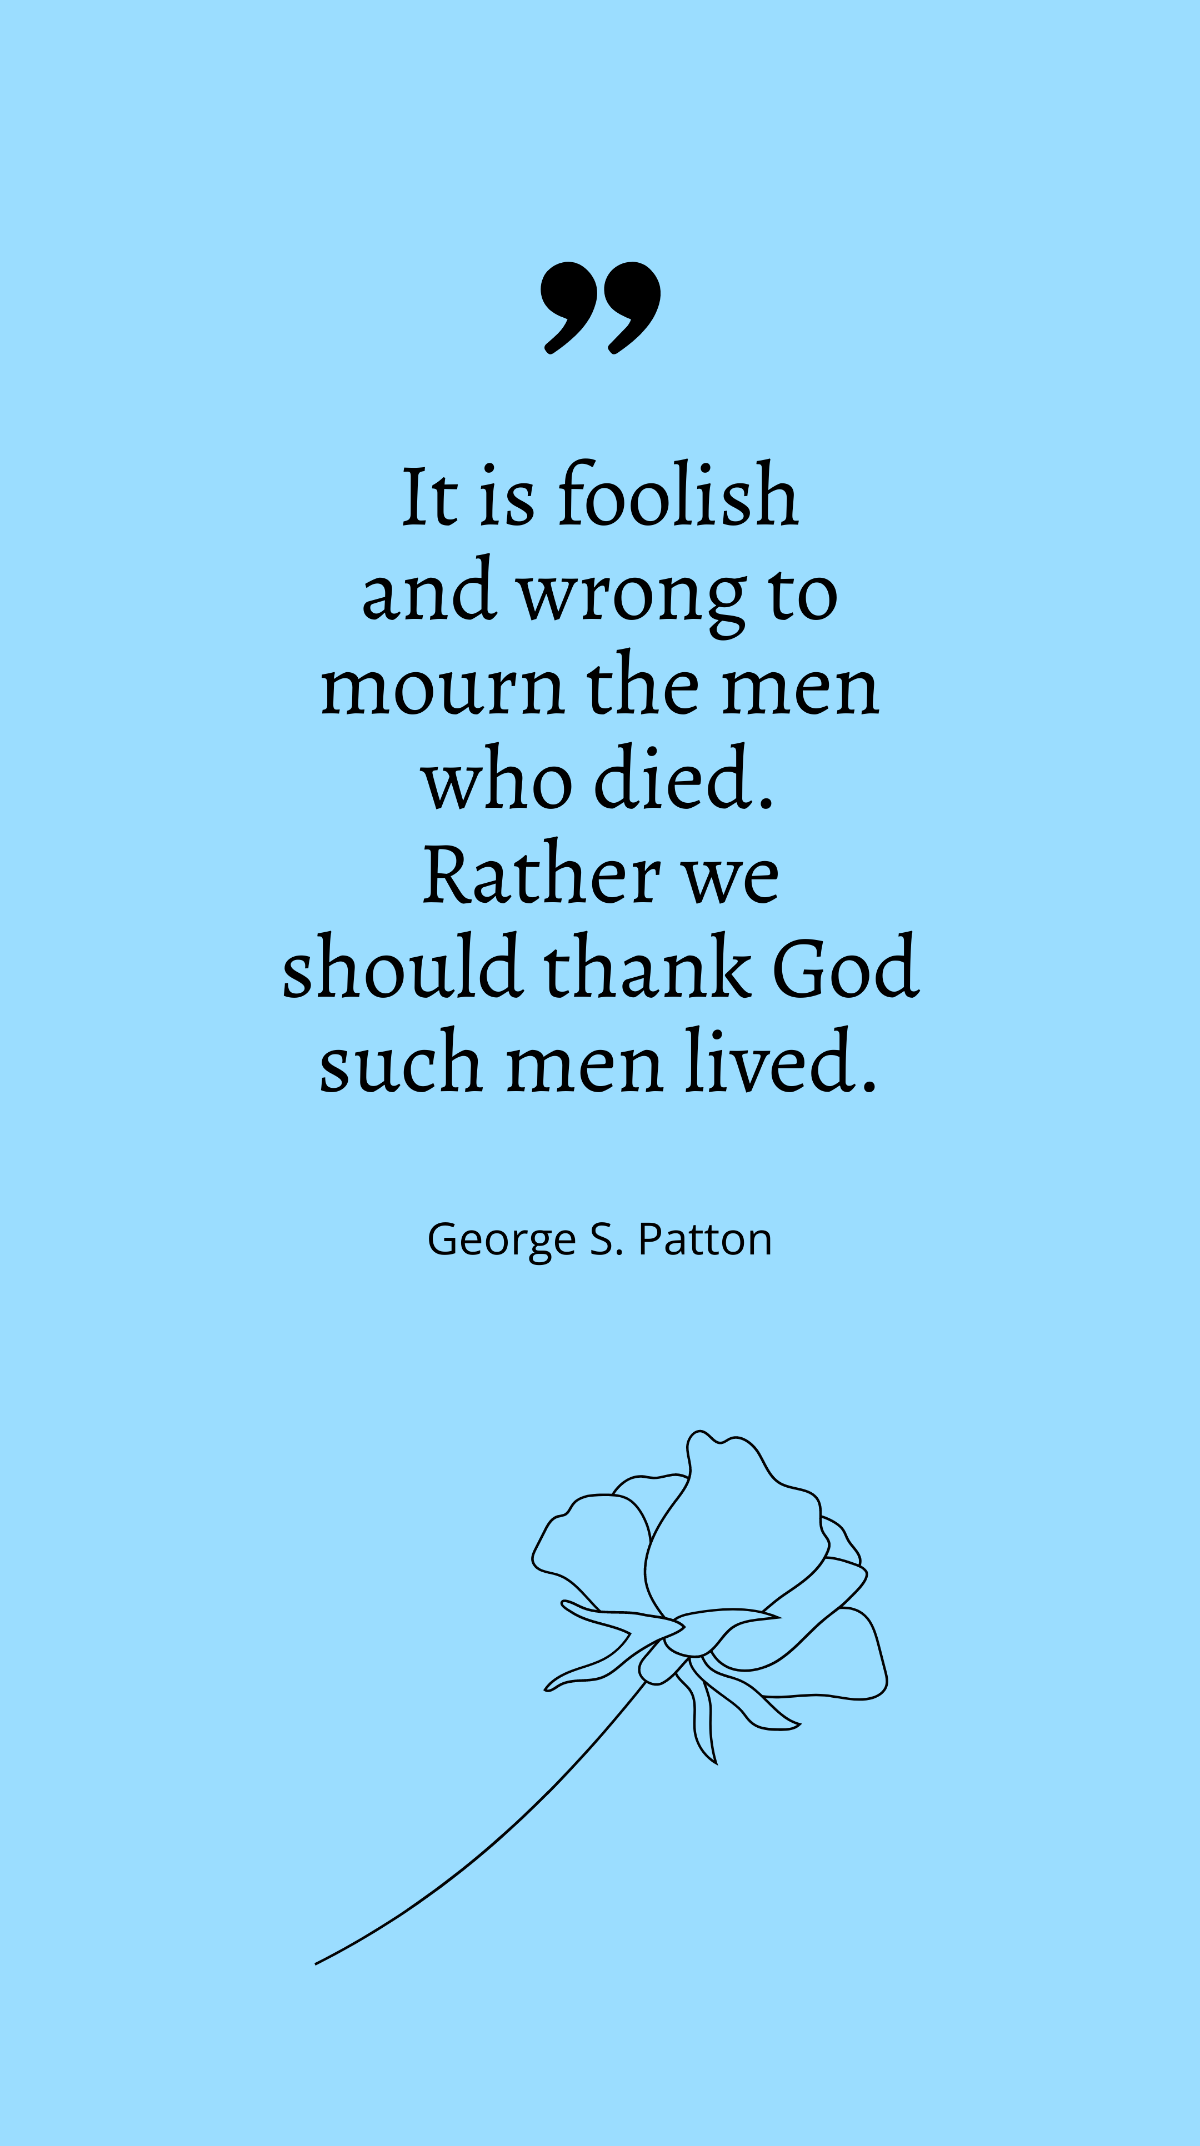 George S. Patton - 